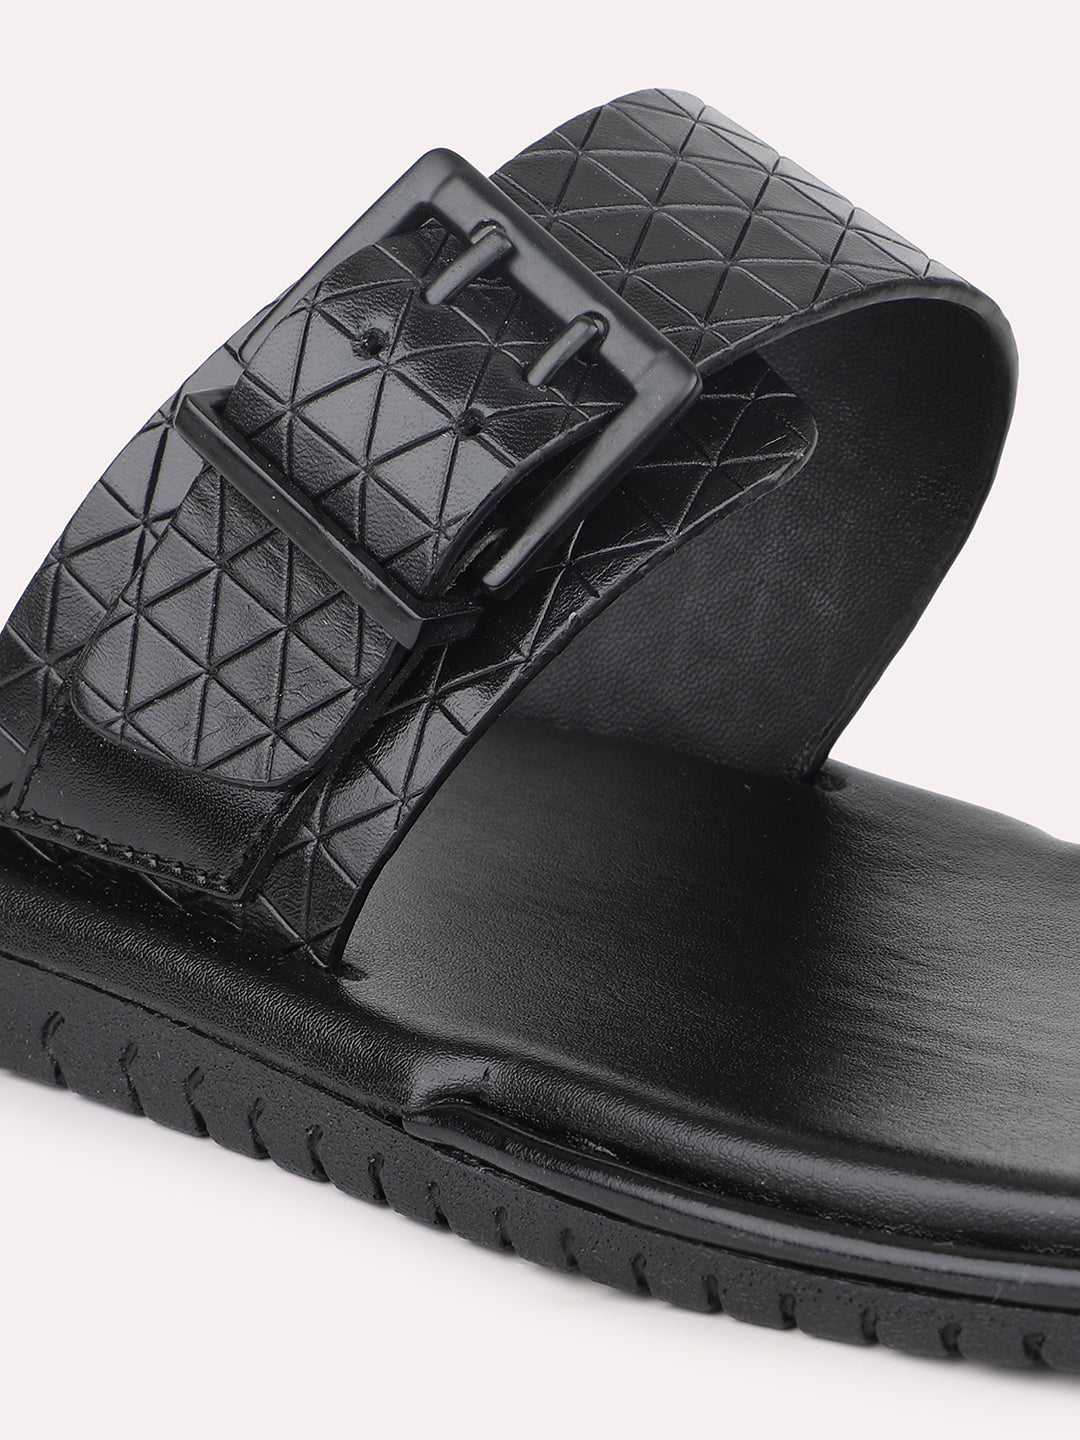 Atesber Black Formal Slip-on Sandal For Men